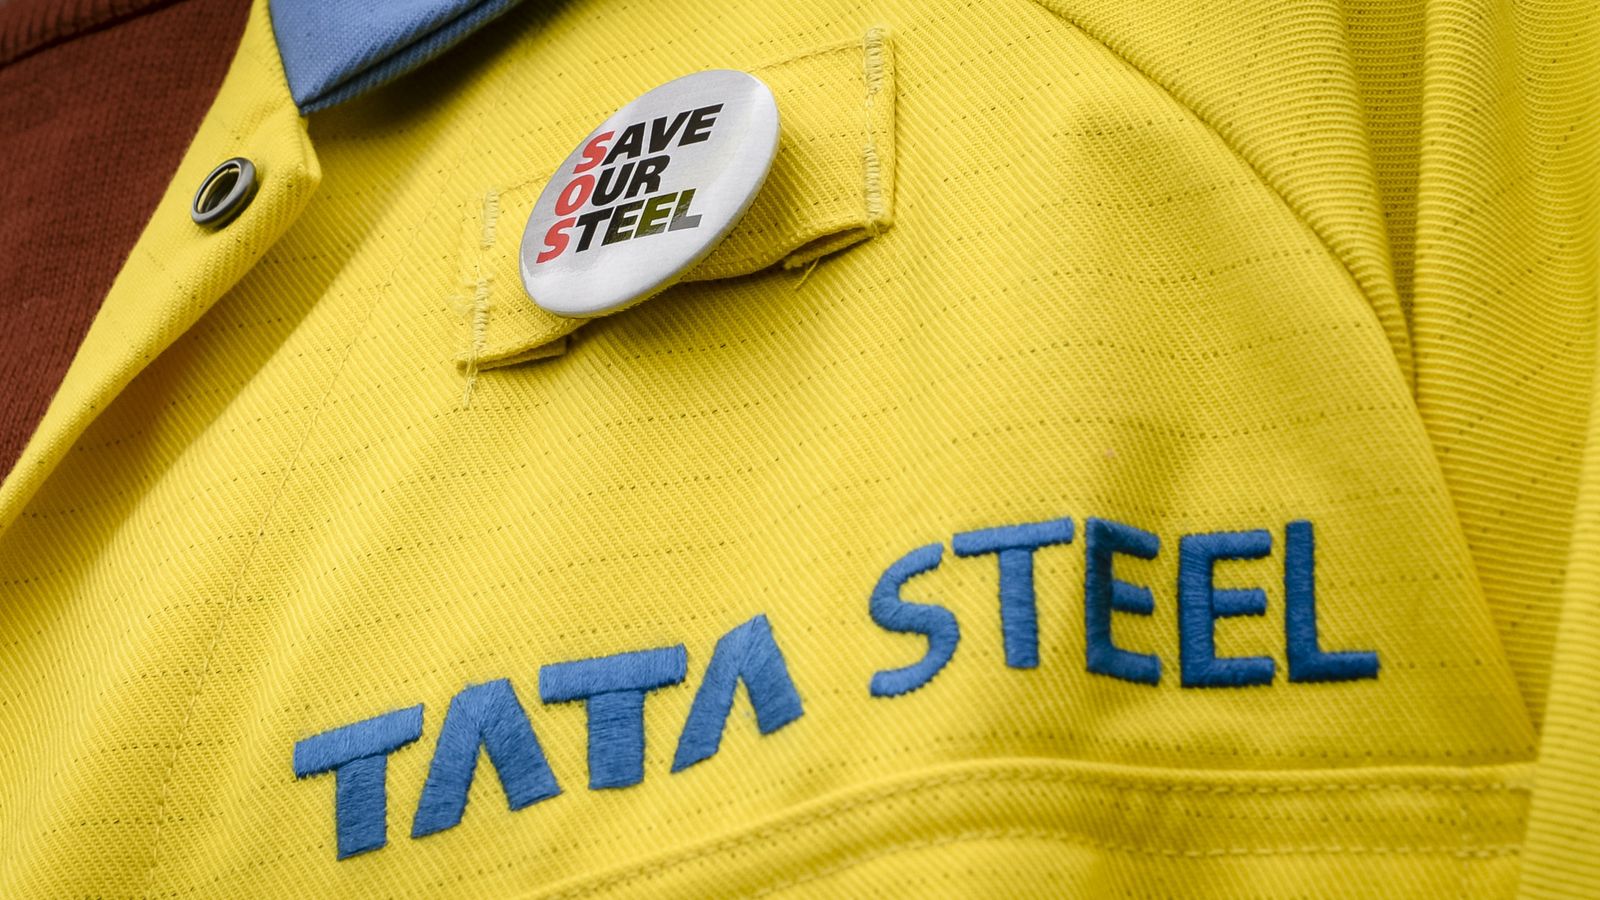 Tata's Port Talbot steelworks set to be shutdown early due to Unite strikes